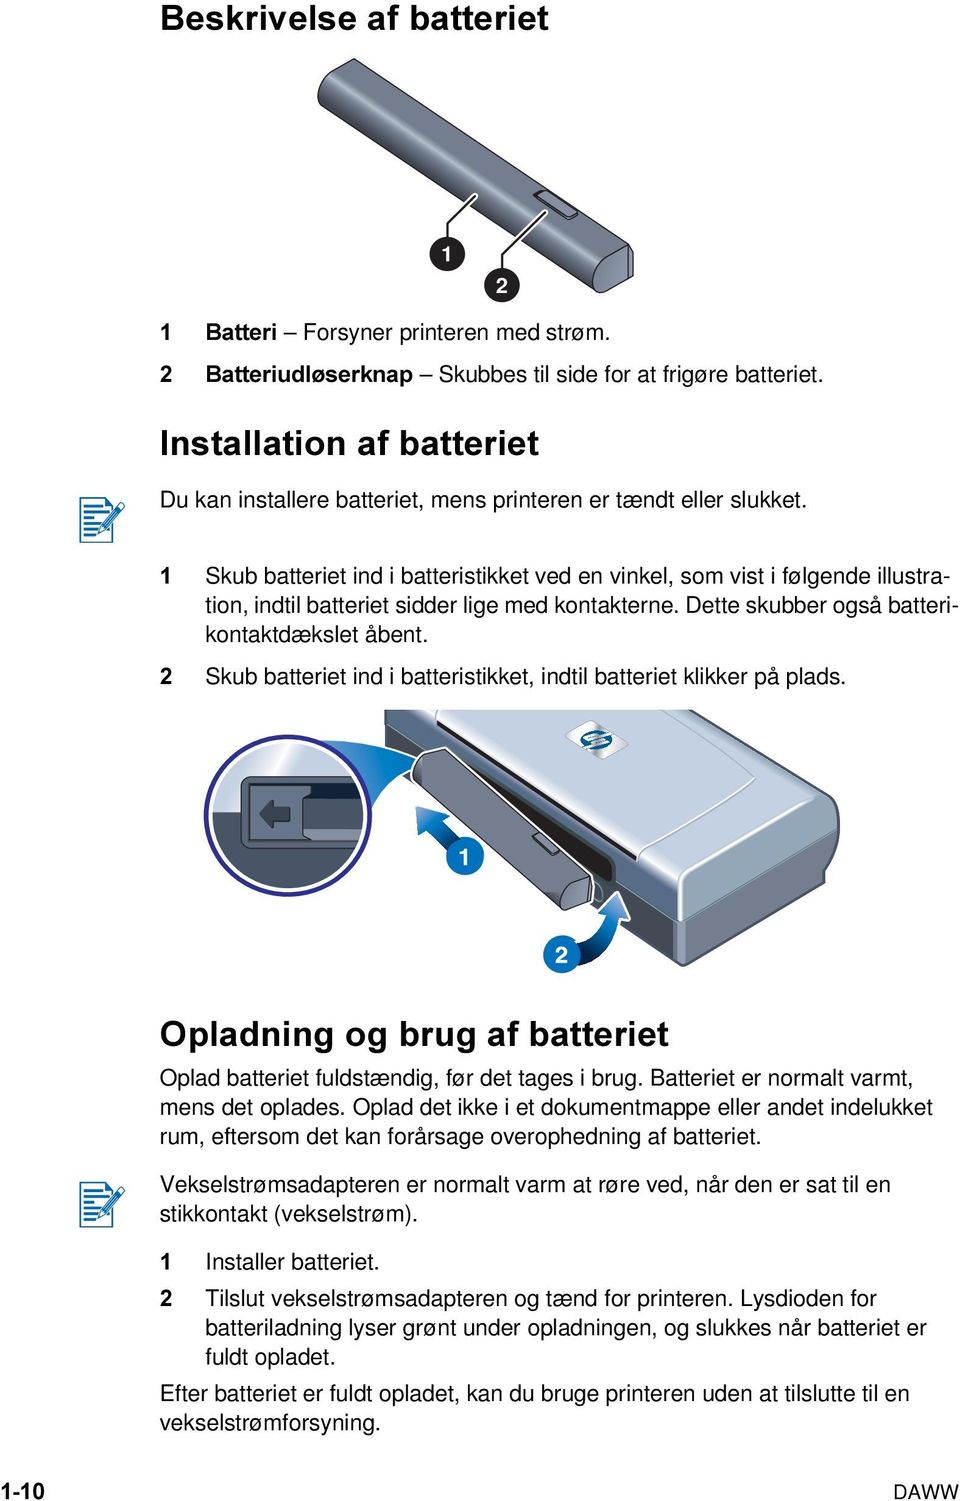 1 Skub batteriet ind i batteristikket ved en vinkel, som vist i følgende illustration, indtil batteriet sidder lige med kontakterne. Dette skubber også batterikontaktdækslet åbent.